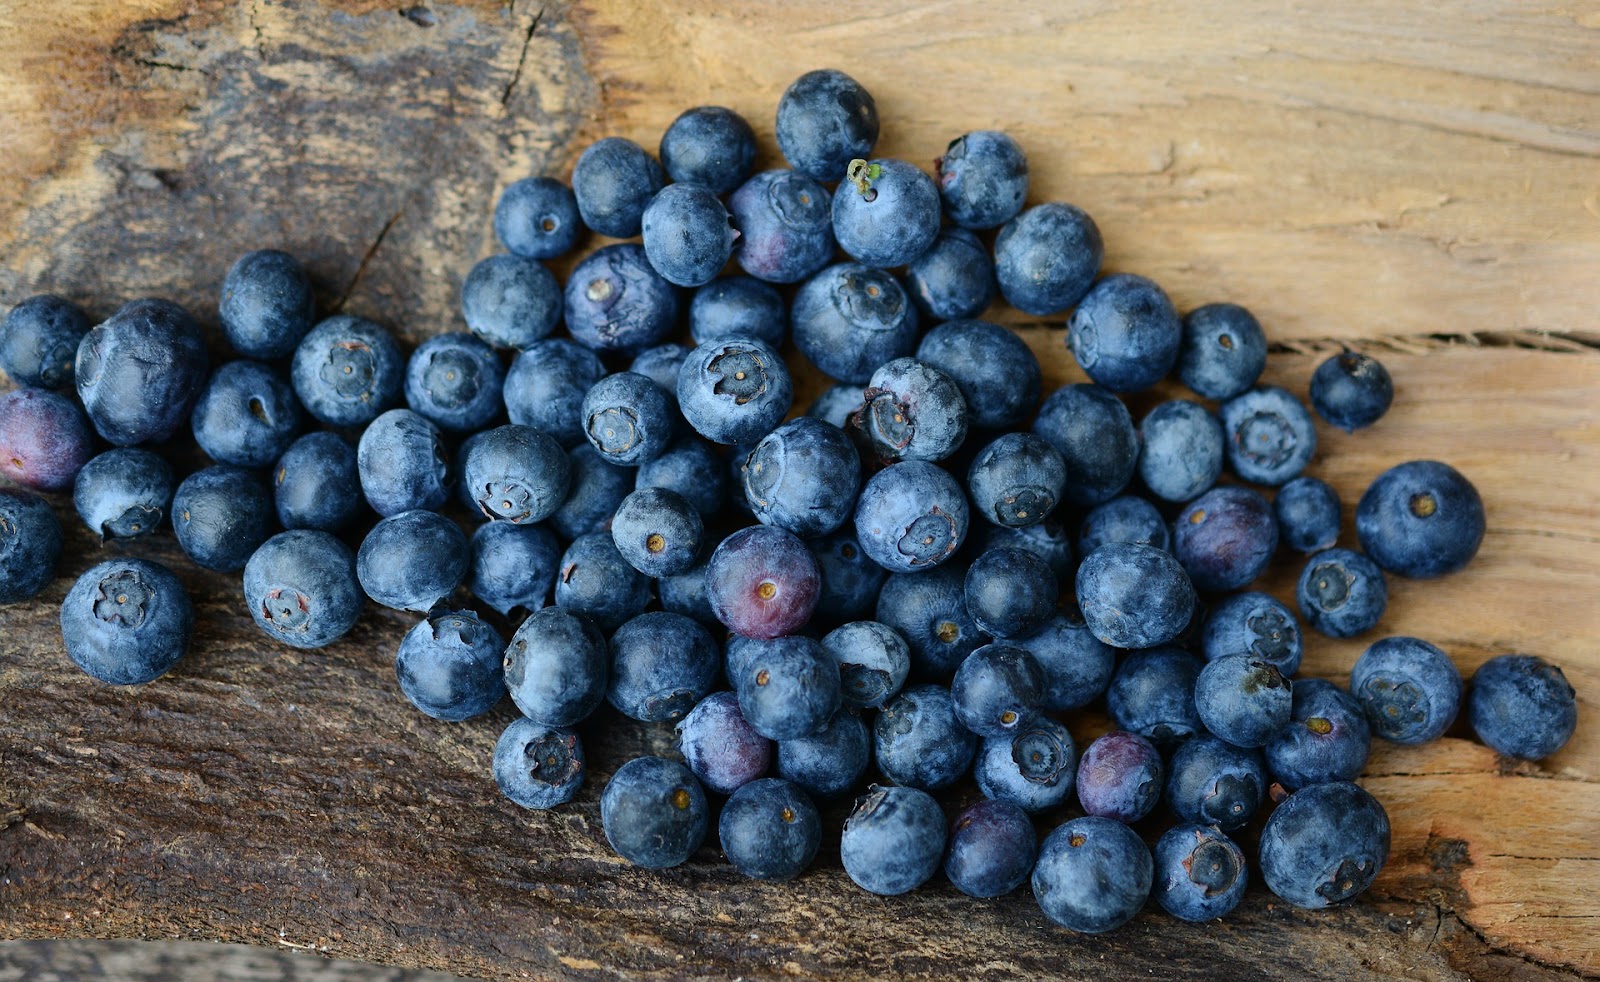  types of berries